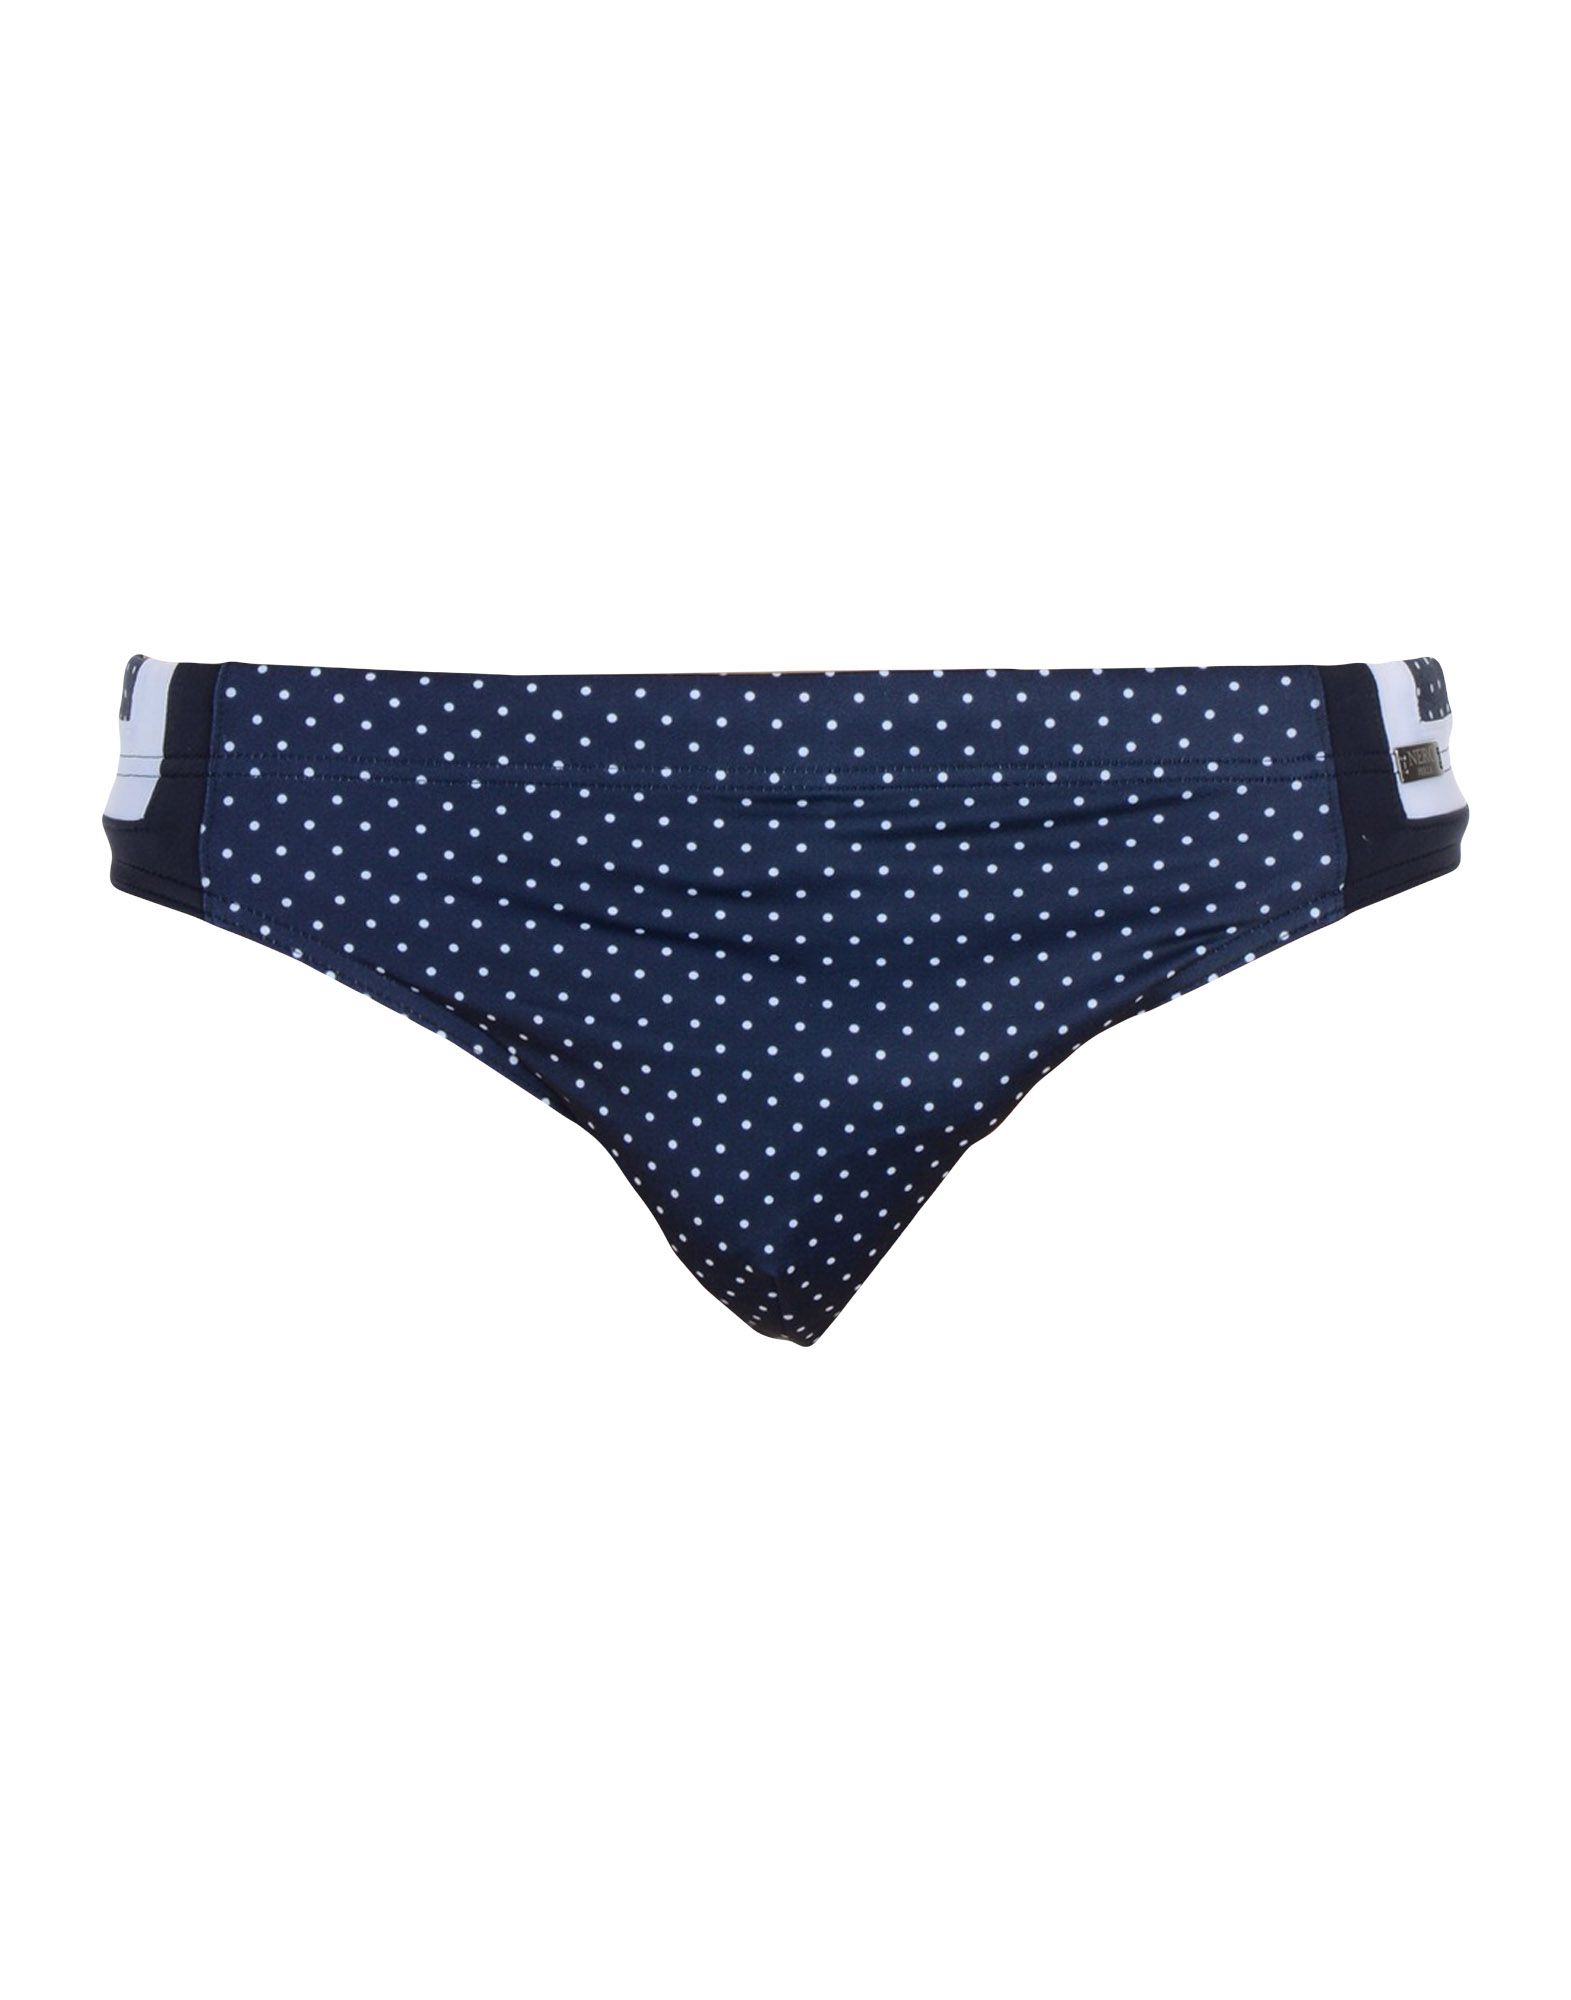 nero perla 三角泳裤 in dark blue